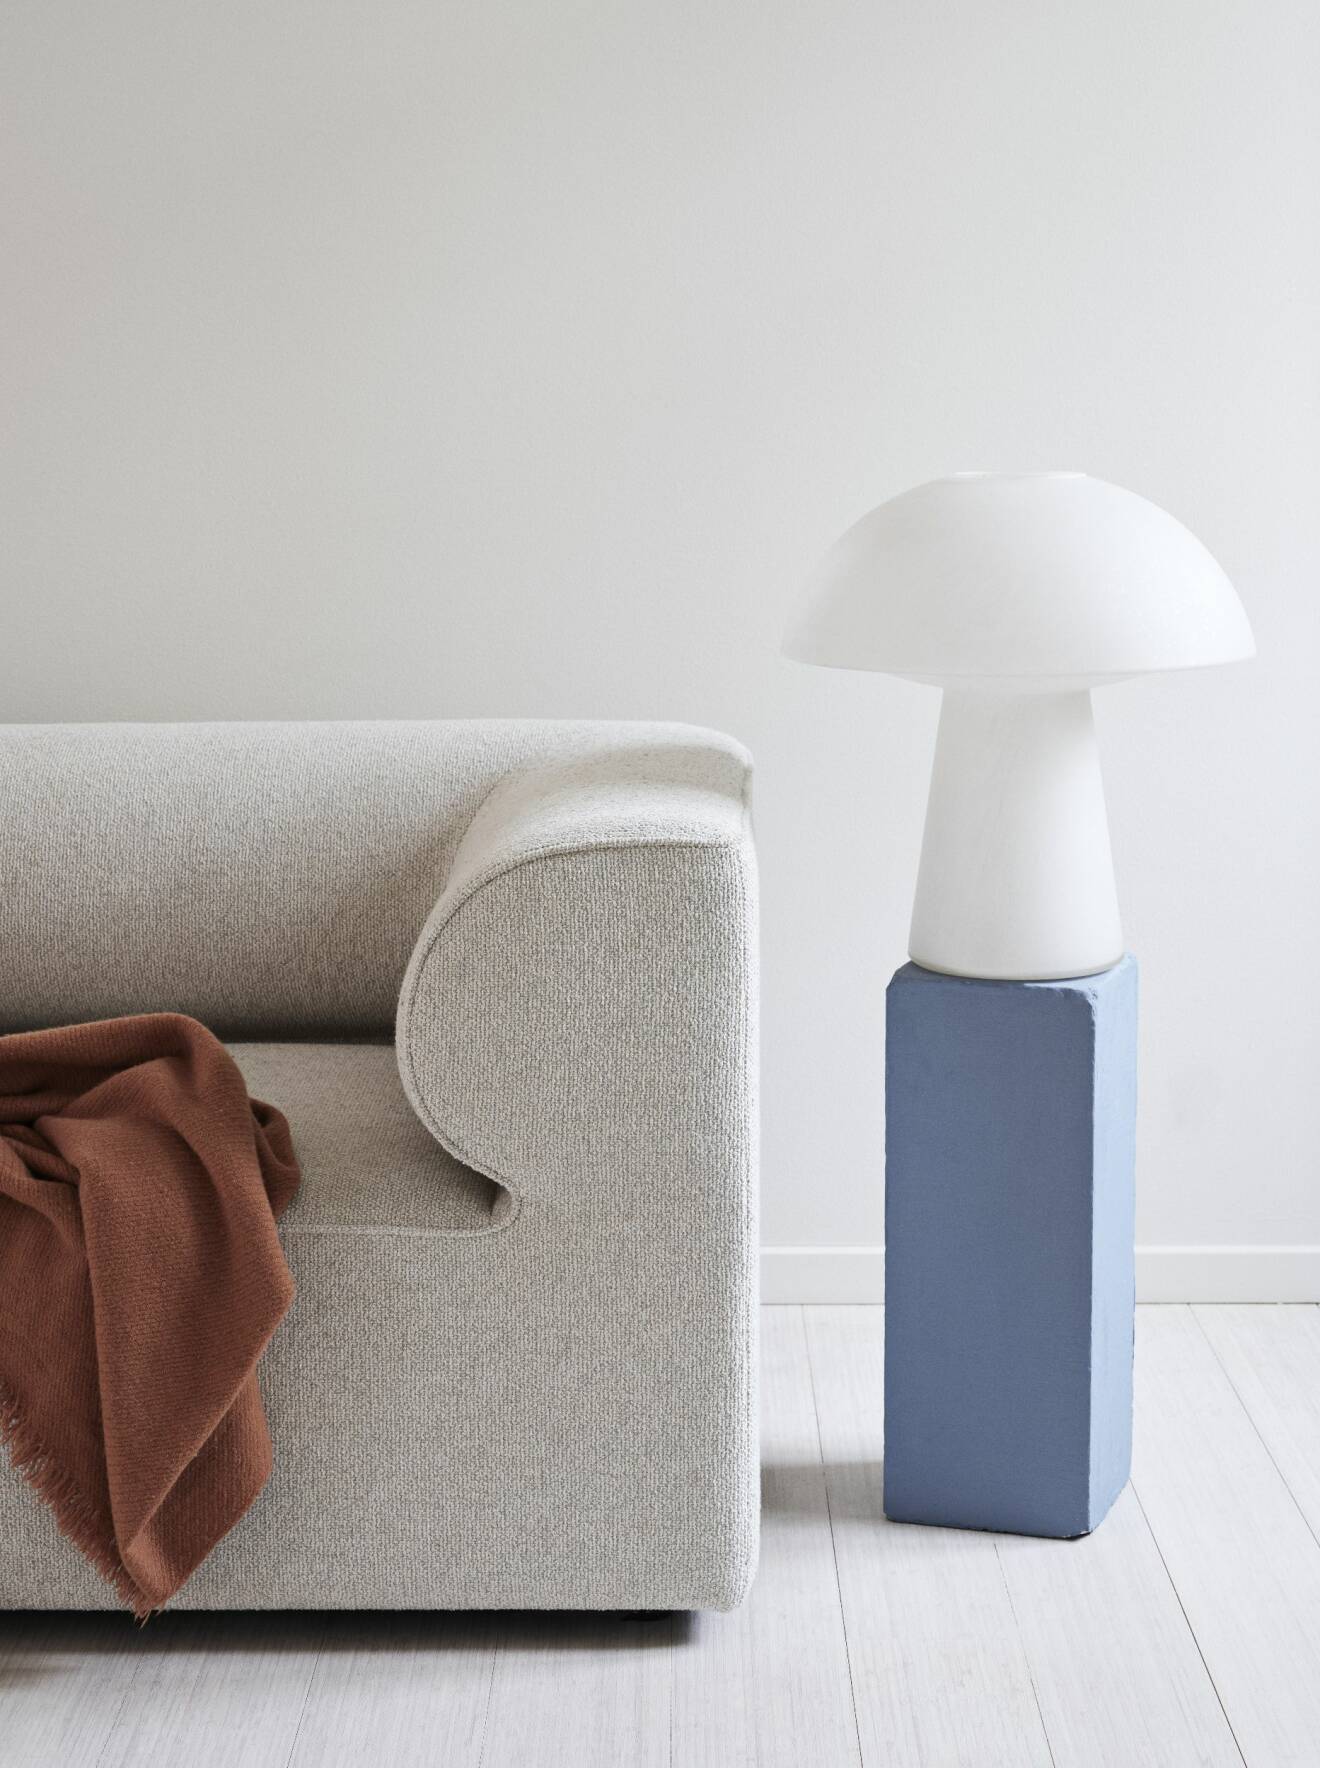 Hemma hos väskdesignern Yvonne Koné i Köpenhamn soffa lampa